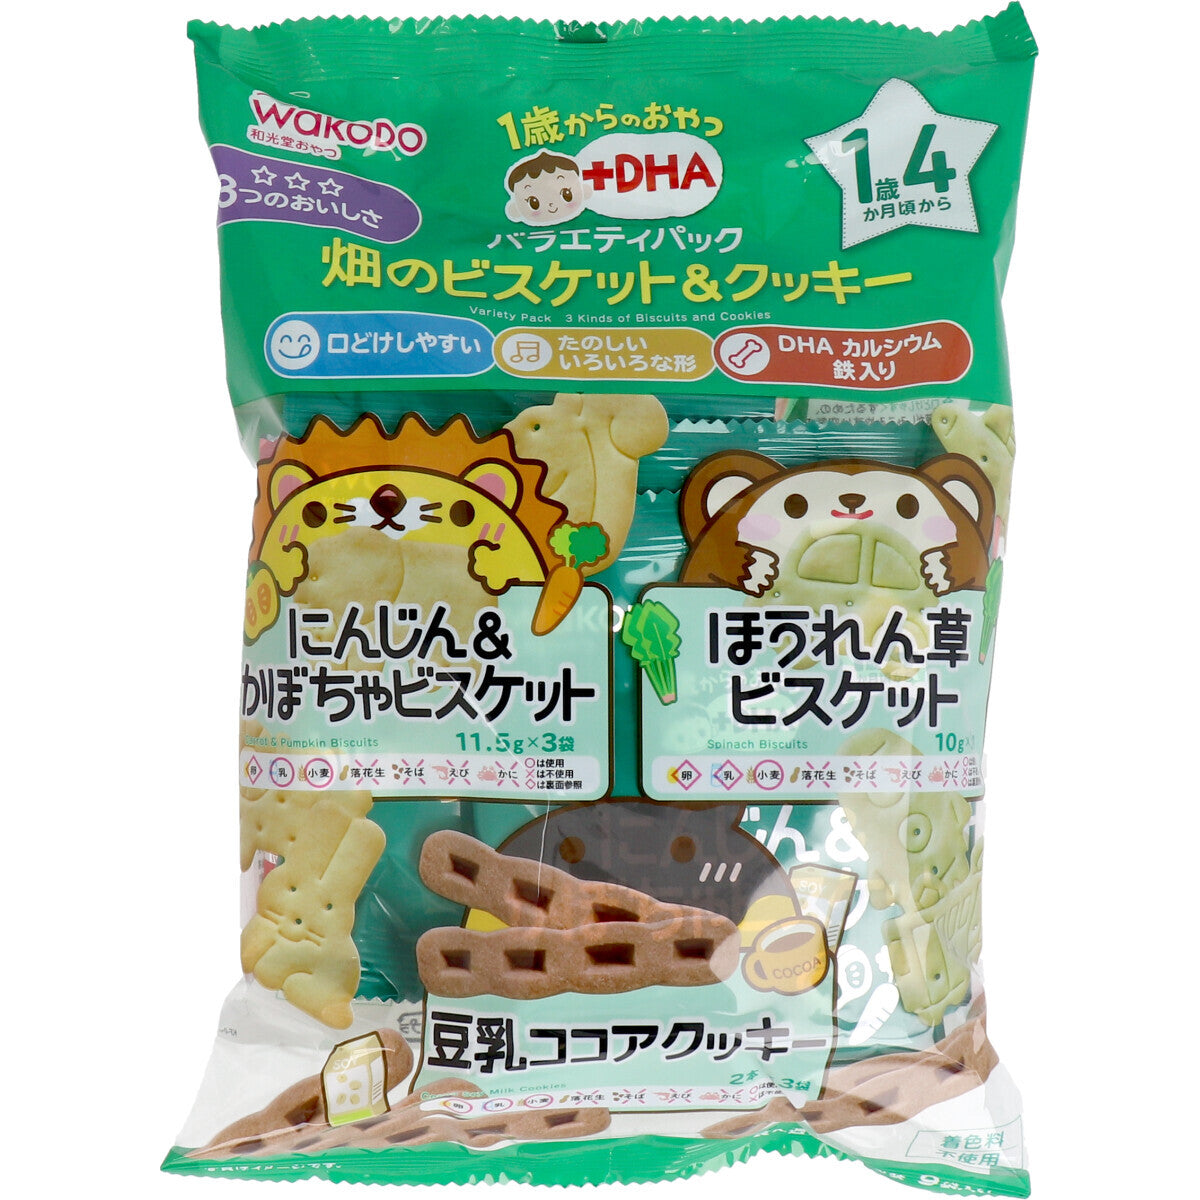 Wakodo - Baby Snacks + DHA Variety Pack Field Biscuits & Cookies 9 Bags